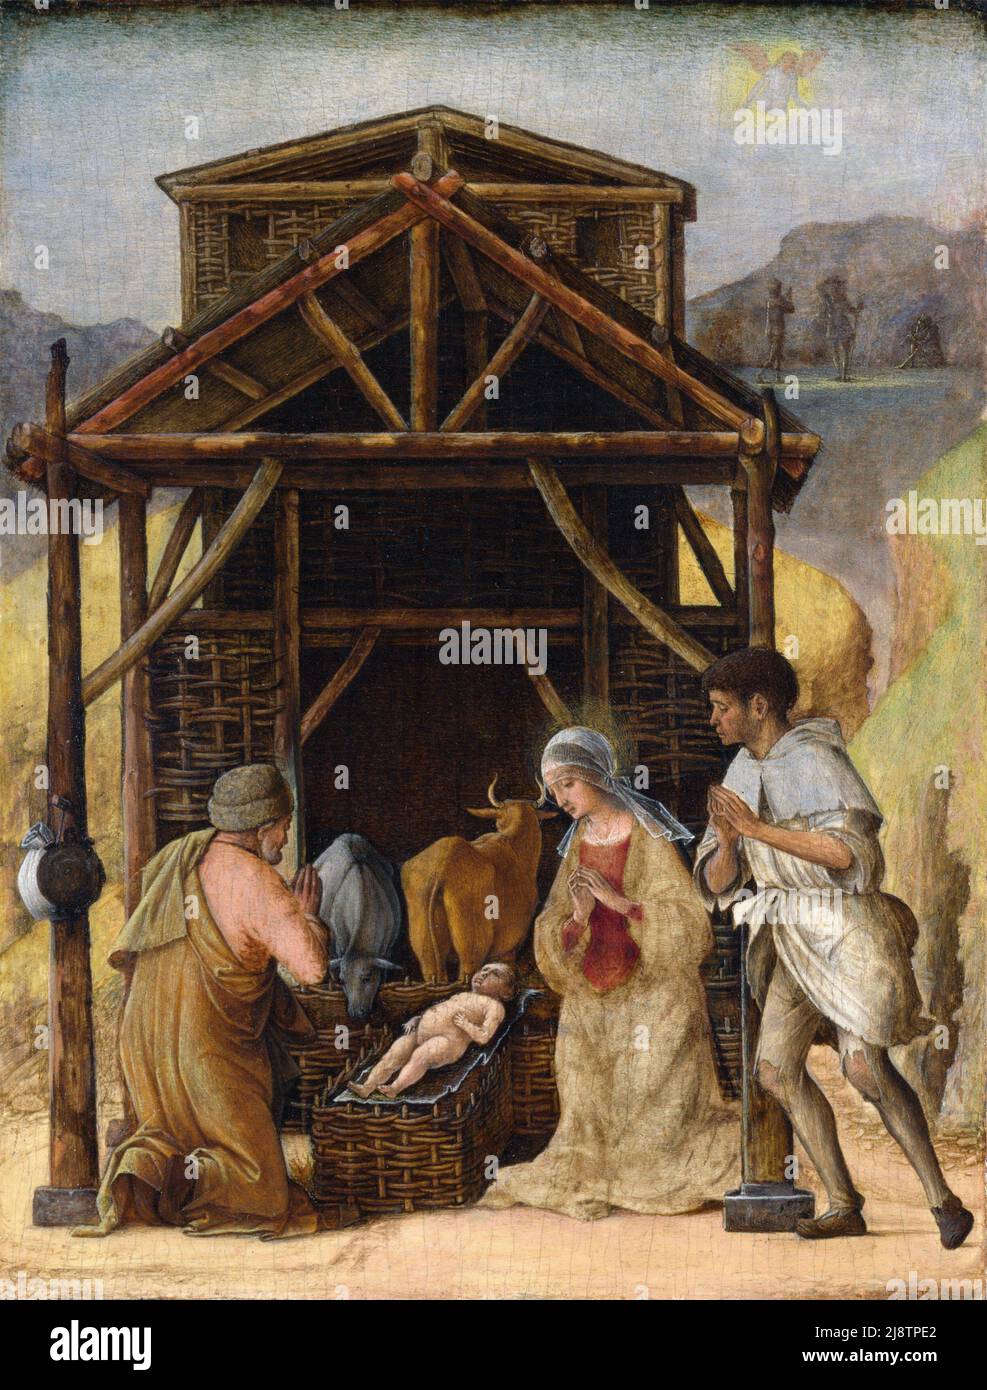 La Adoración de los Pastores por el artista italiano del Renacimiento temprano, Ercole de' Roberti (c. 1451-1496), temperatura sobre madera, c. 1490 Foto de stock